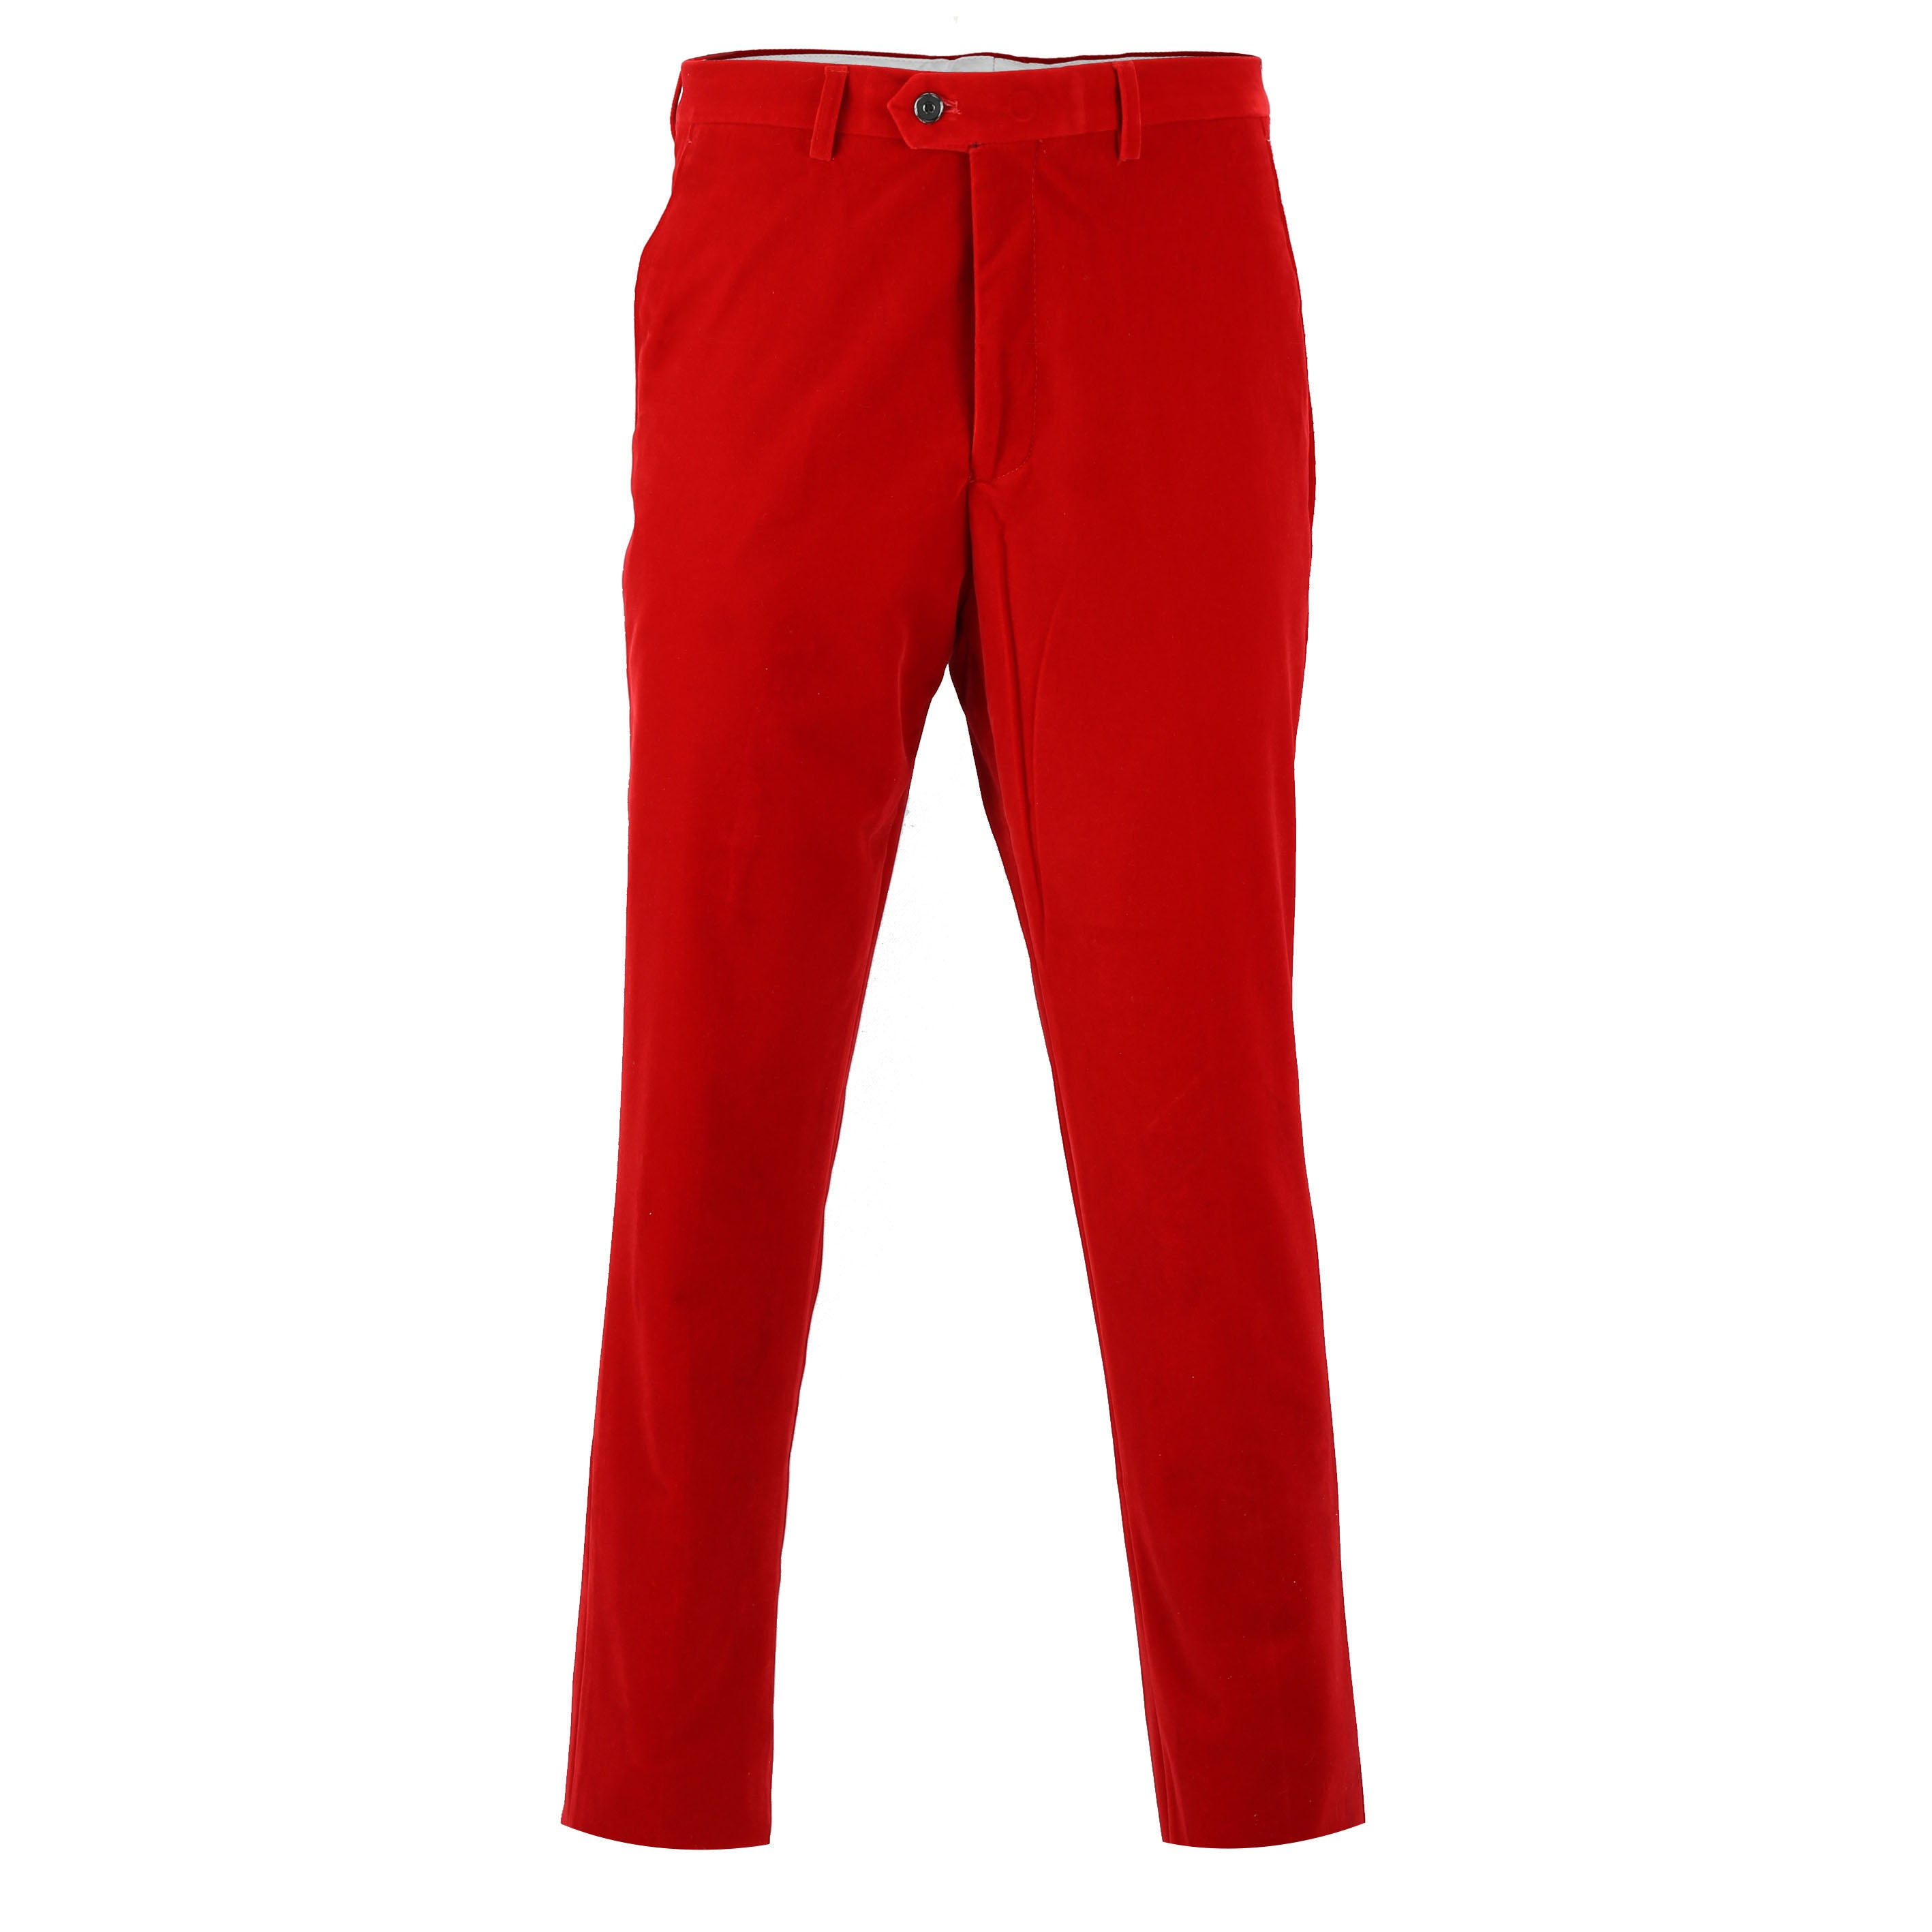 Mens Red Slim Fit Soft Velvet Formal Dress Suit Pants